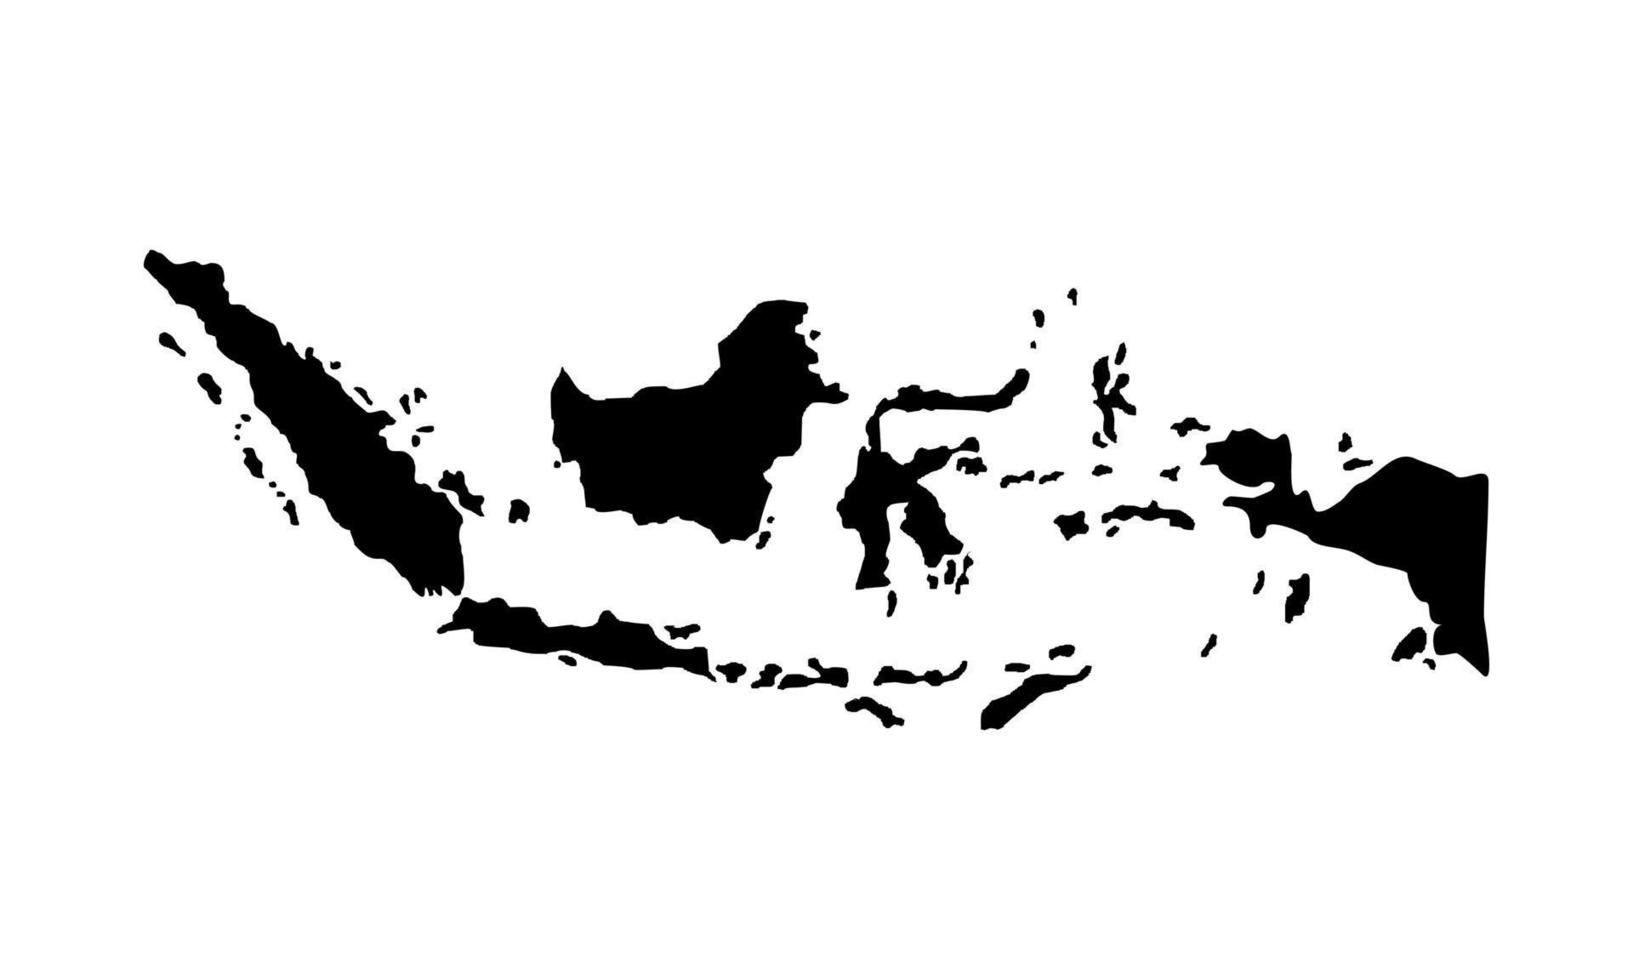 mapa da indonésia para aplicativo, site, pictograma, infográfico ou elemento de design gráfico. ilustração vetorial vetor